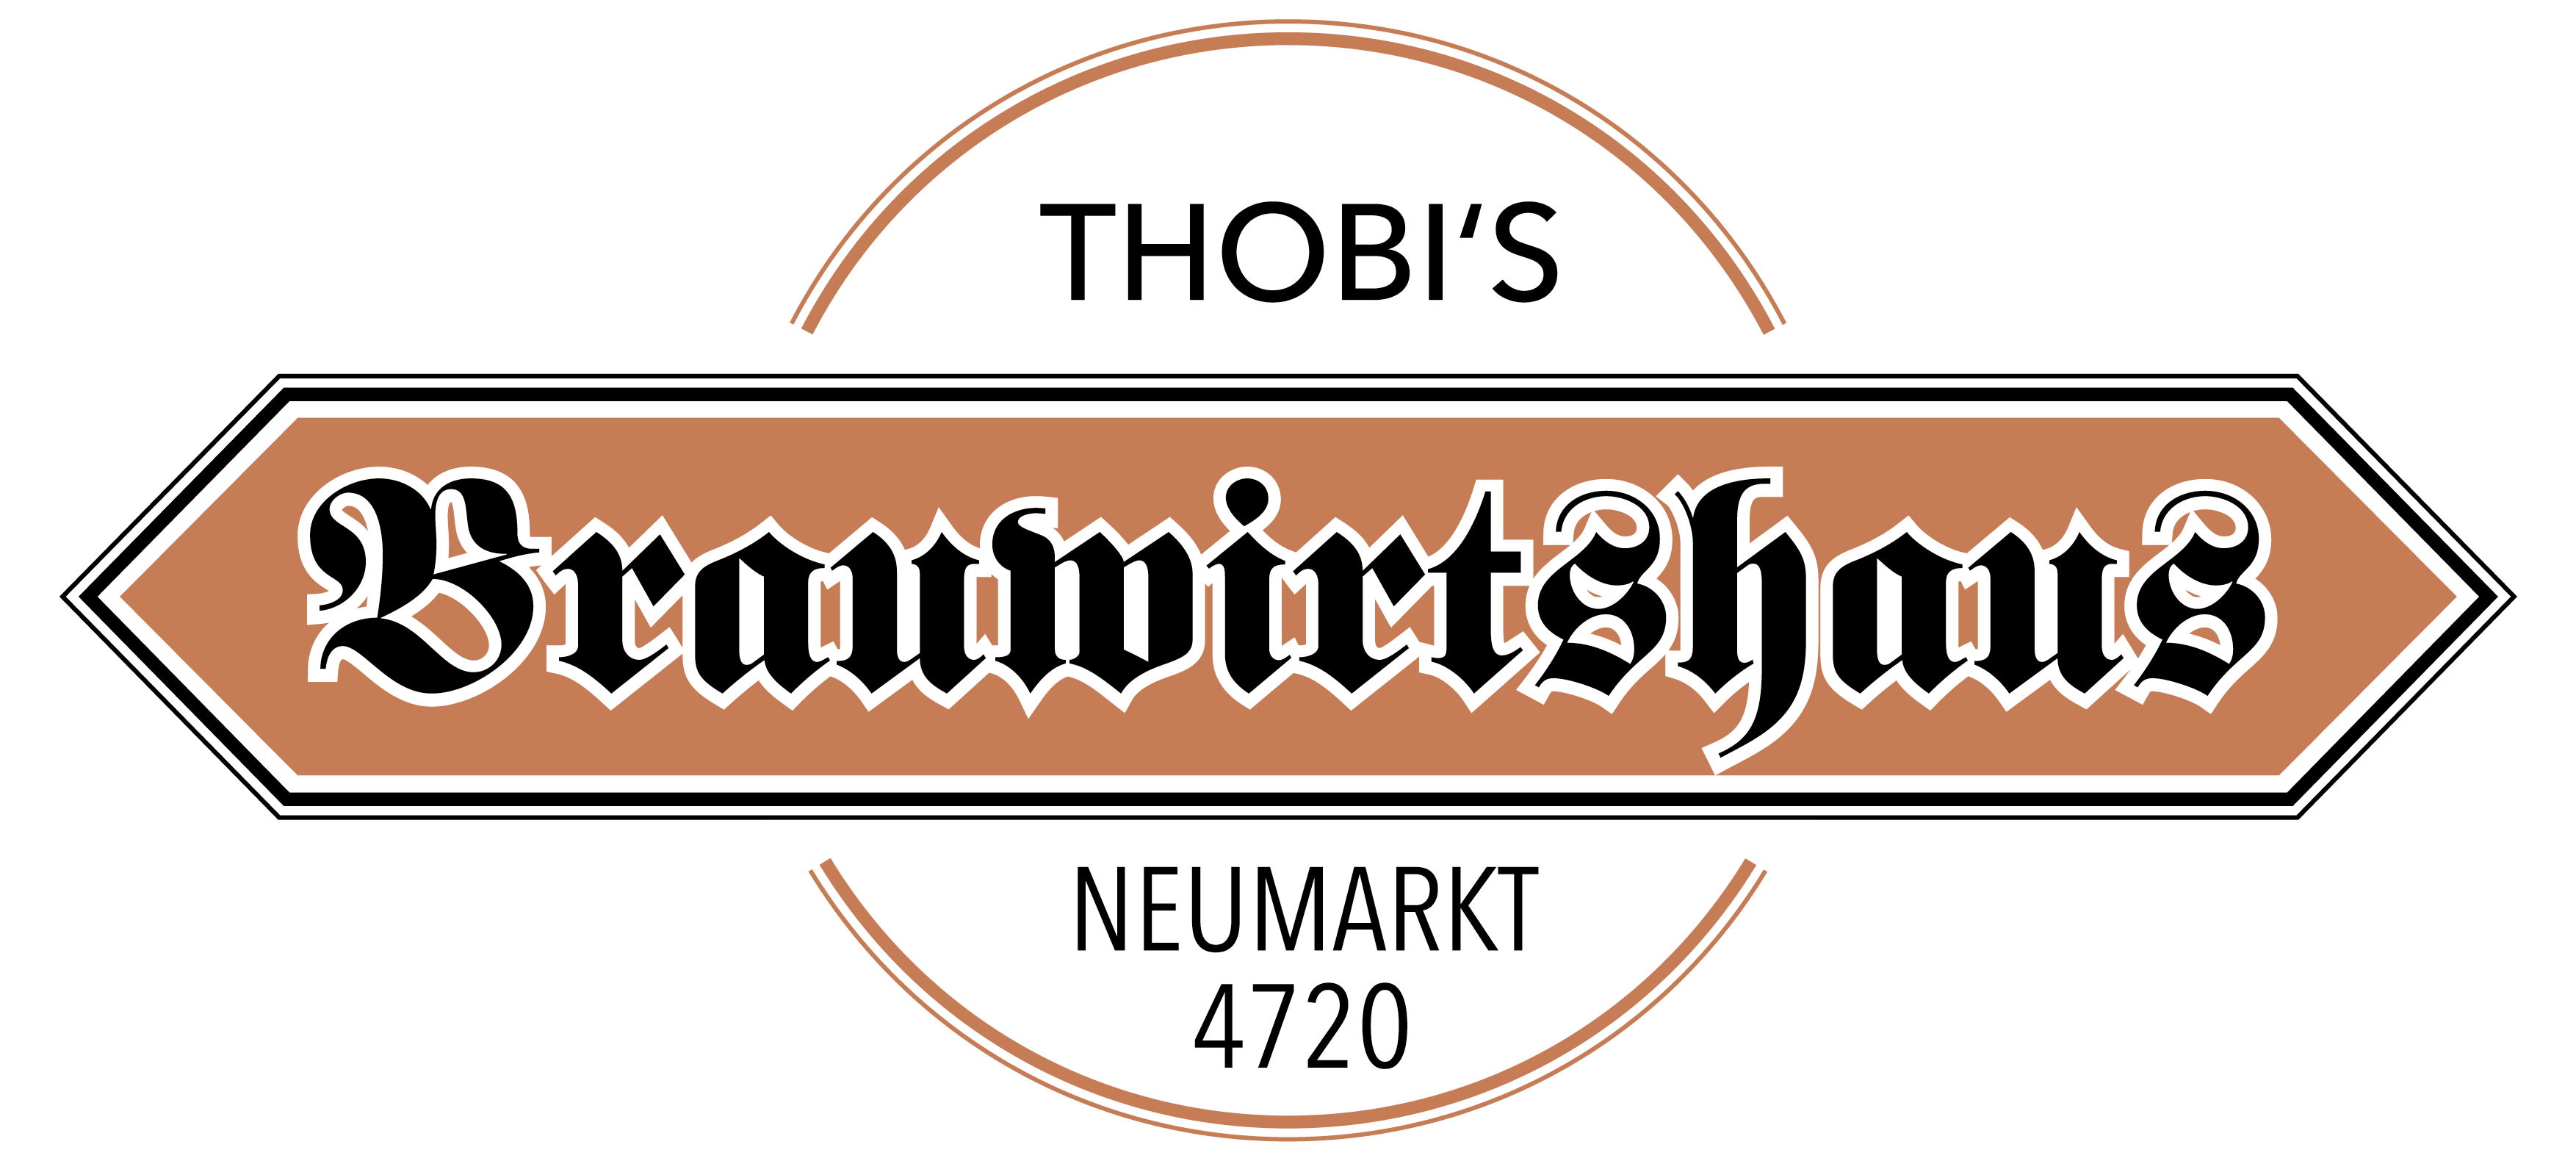 THOBI'S Brauwirtshaus Neumarkt